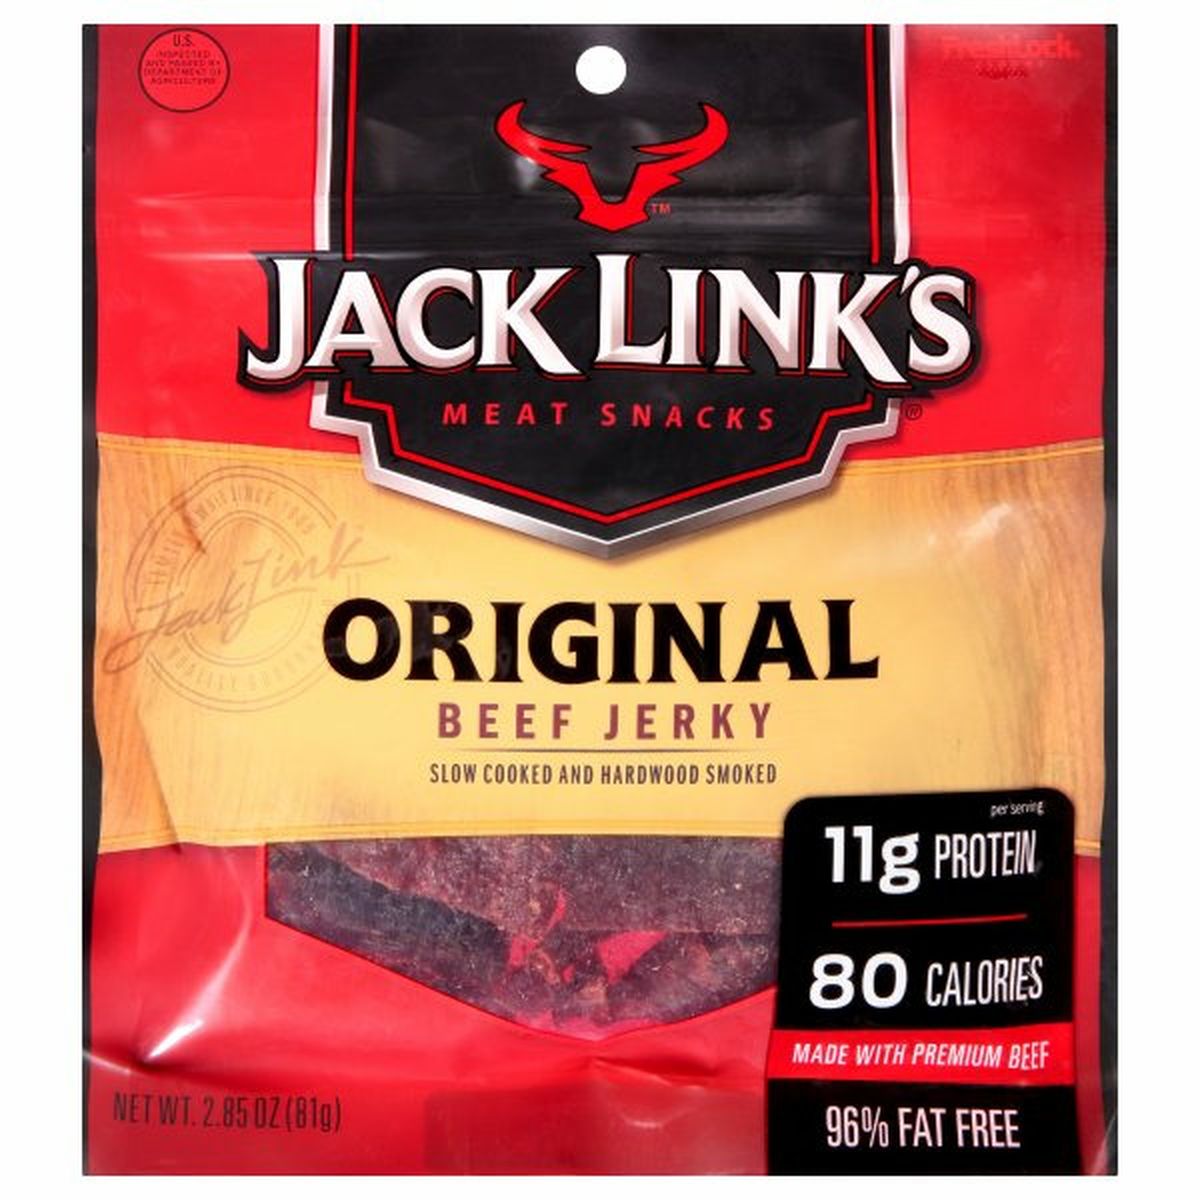 Calories in Jack Link's Beef Jerky, Original